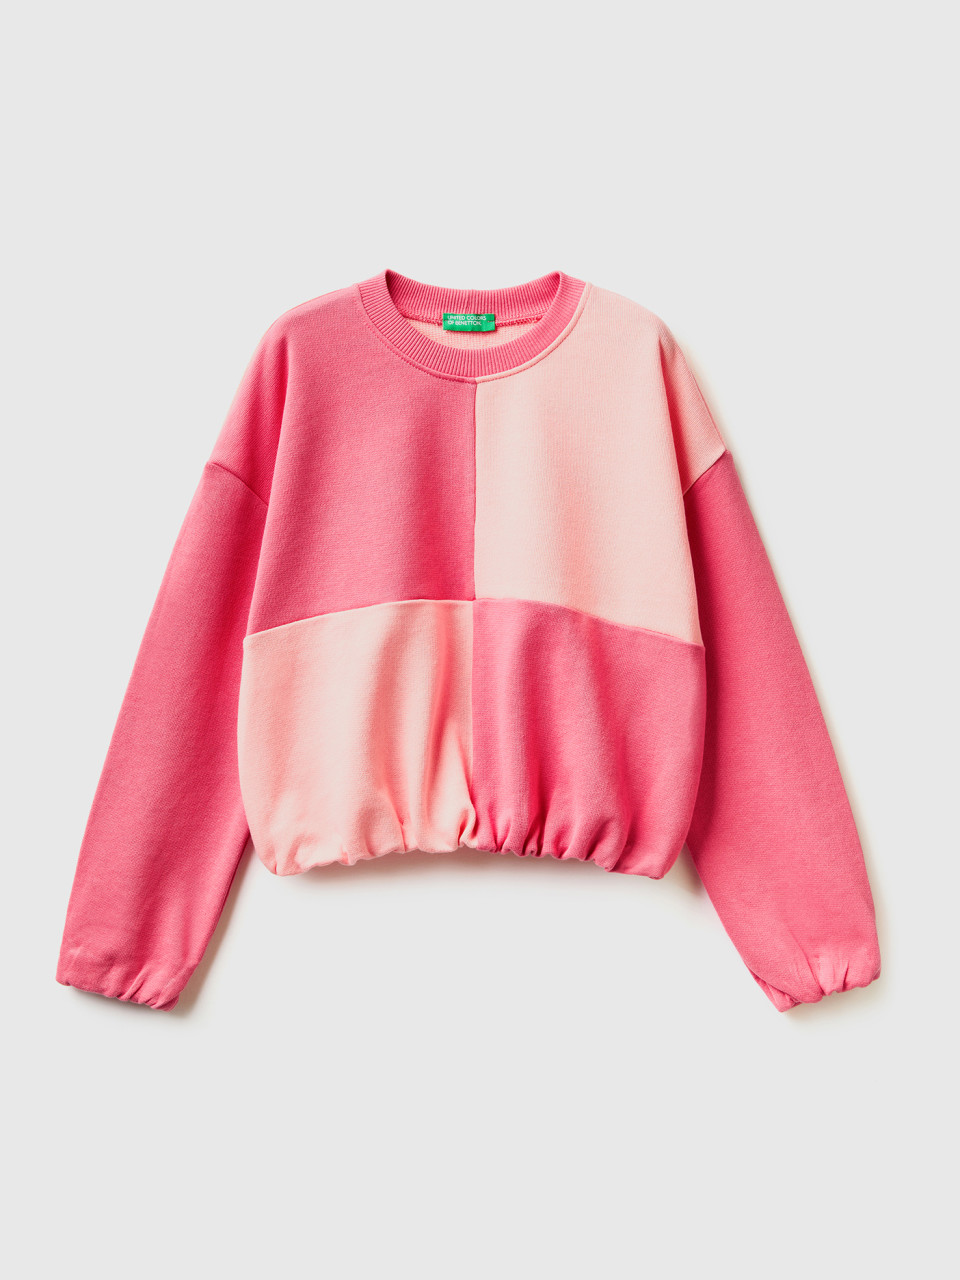 Benetton, Sweatshirt Mit Maxi-karomuster, Pink, female